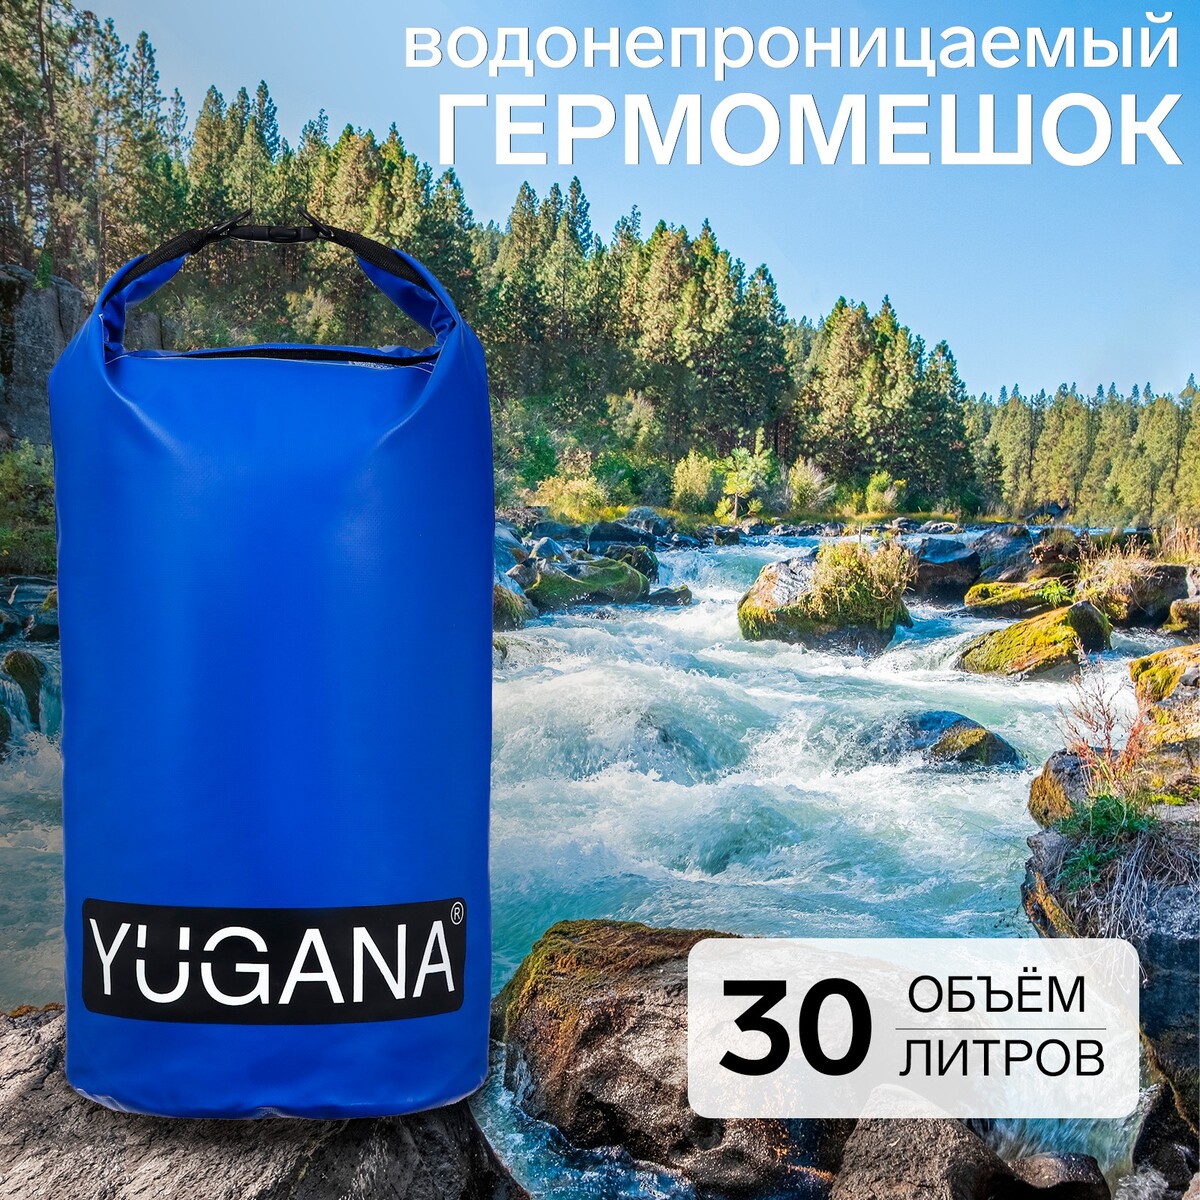 Гермомешок yugana, пвх, водонепроницаемый 30 литров, два ремня, синий